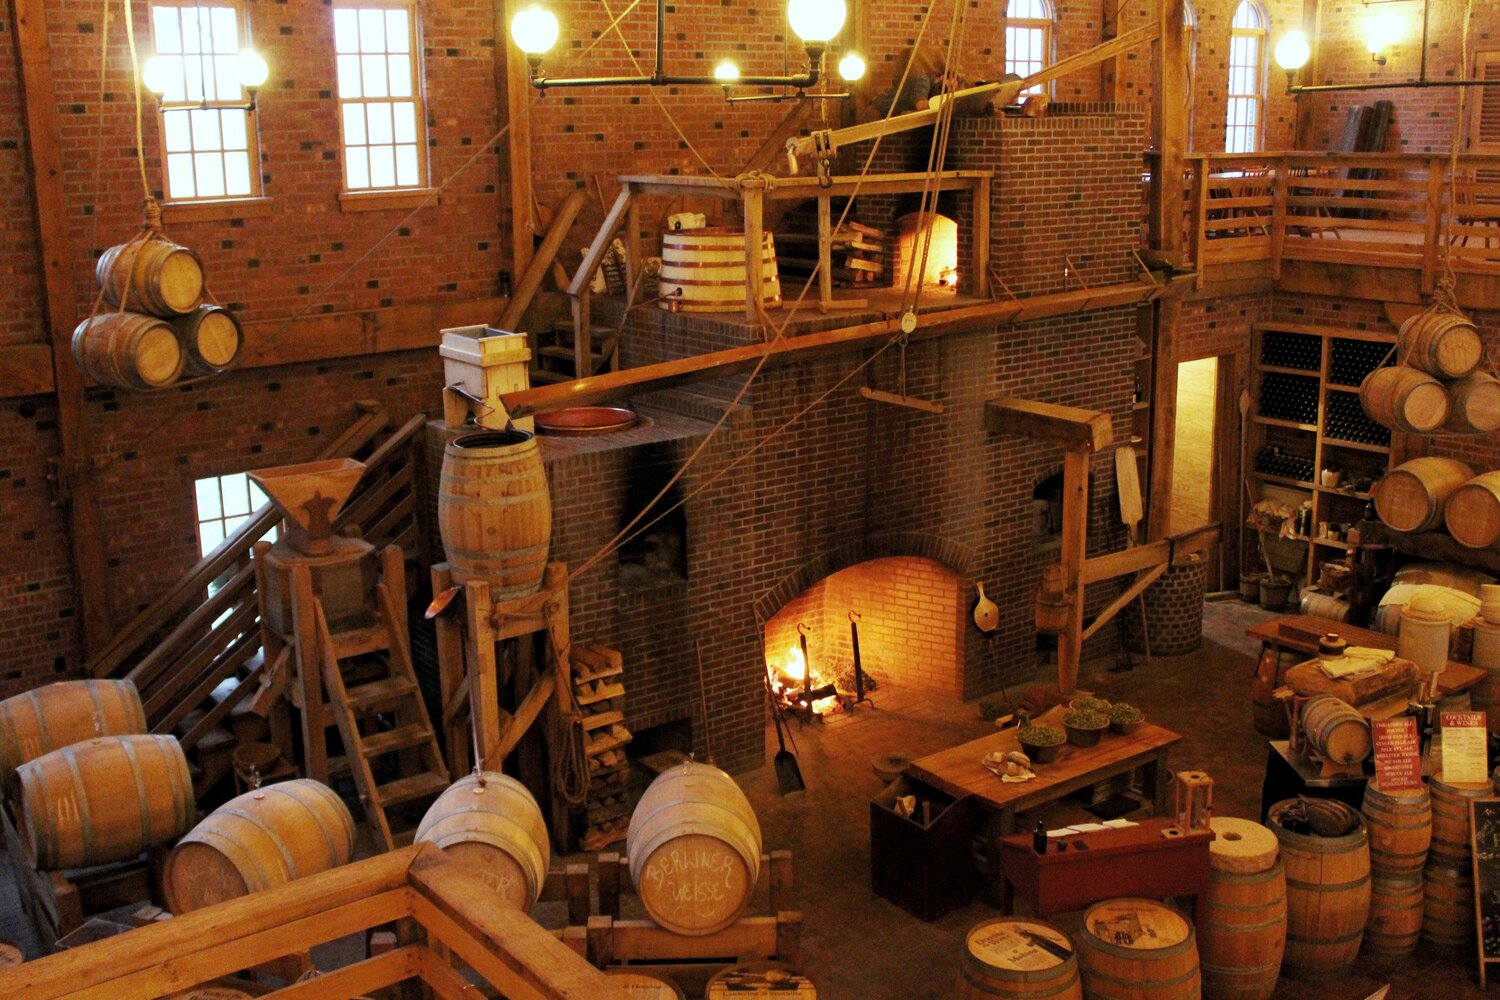 Interior of the Carillon Brewing Company.